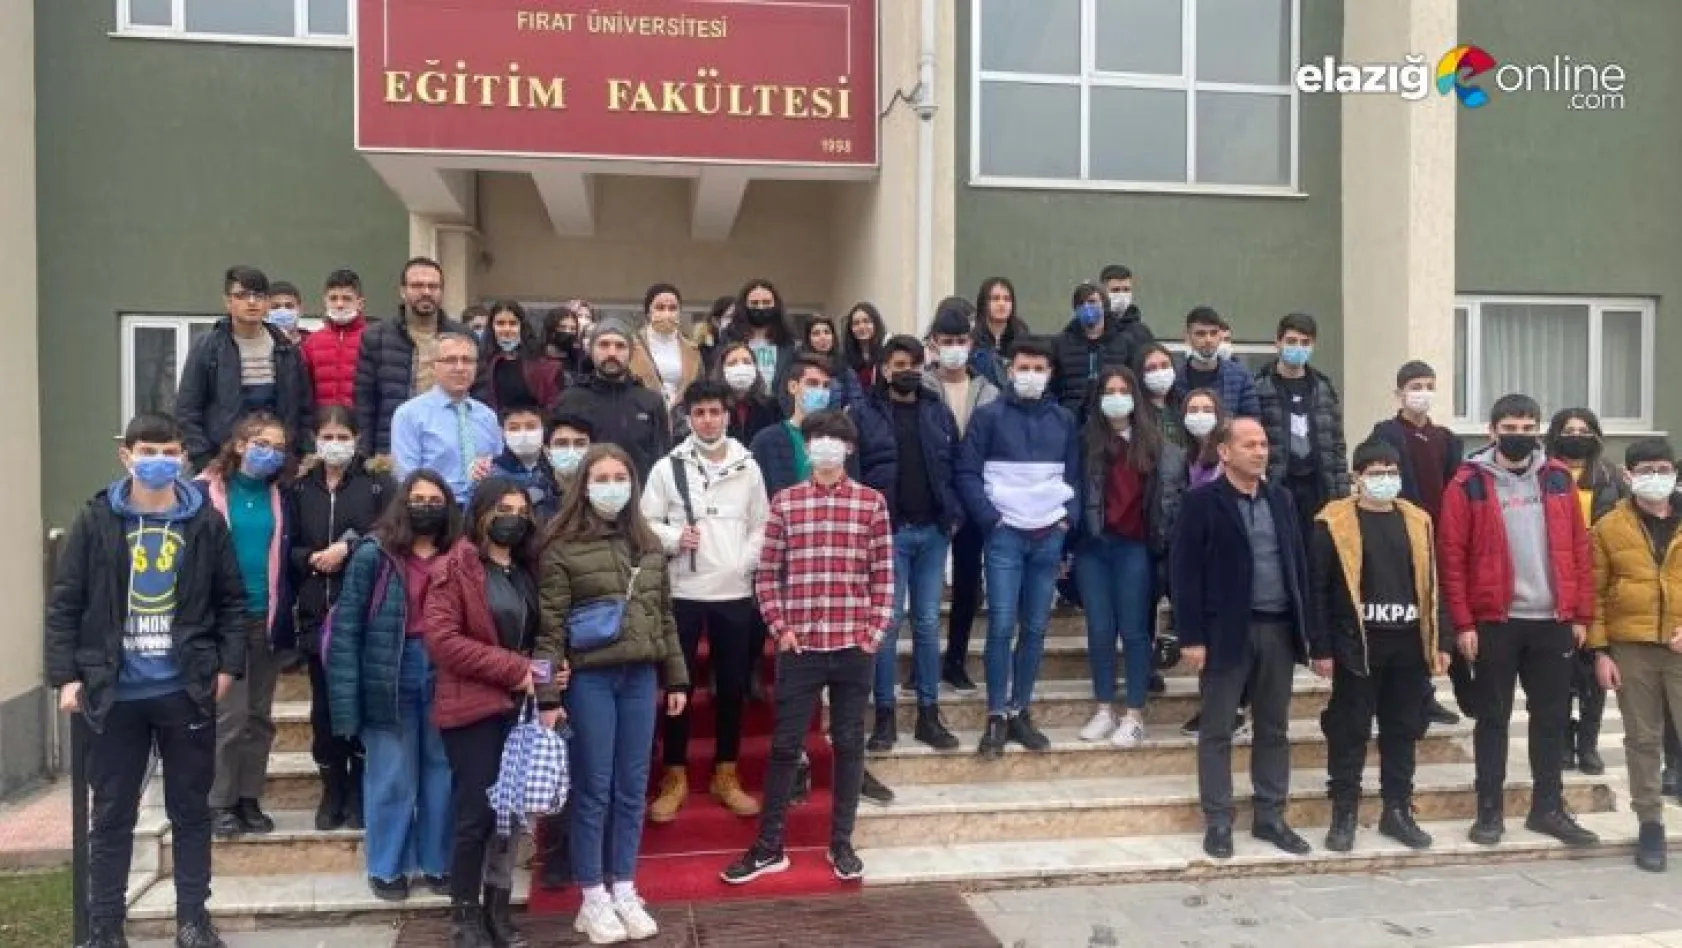 Kiği'dan gelen öğrenciler Fırat Üniversitesi'ni gezdi